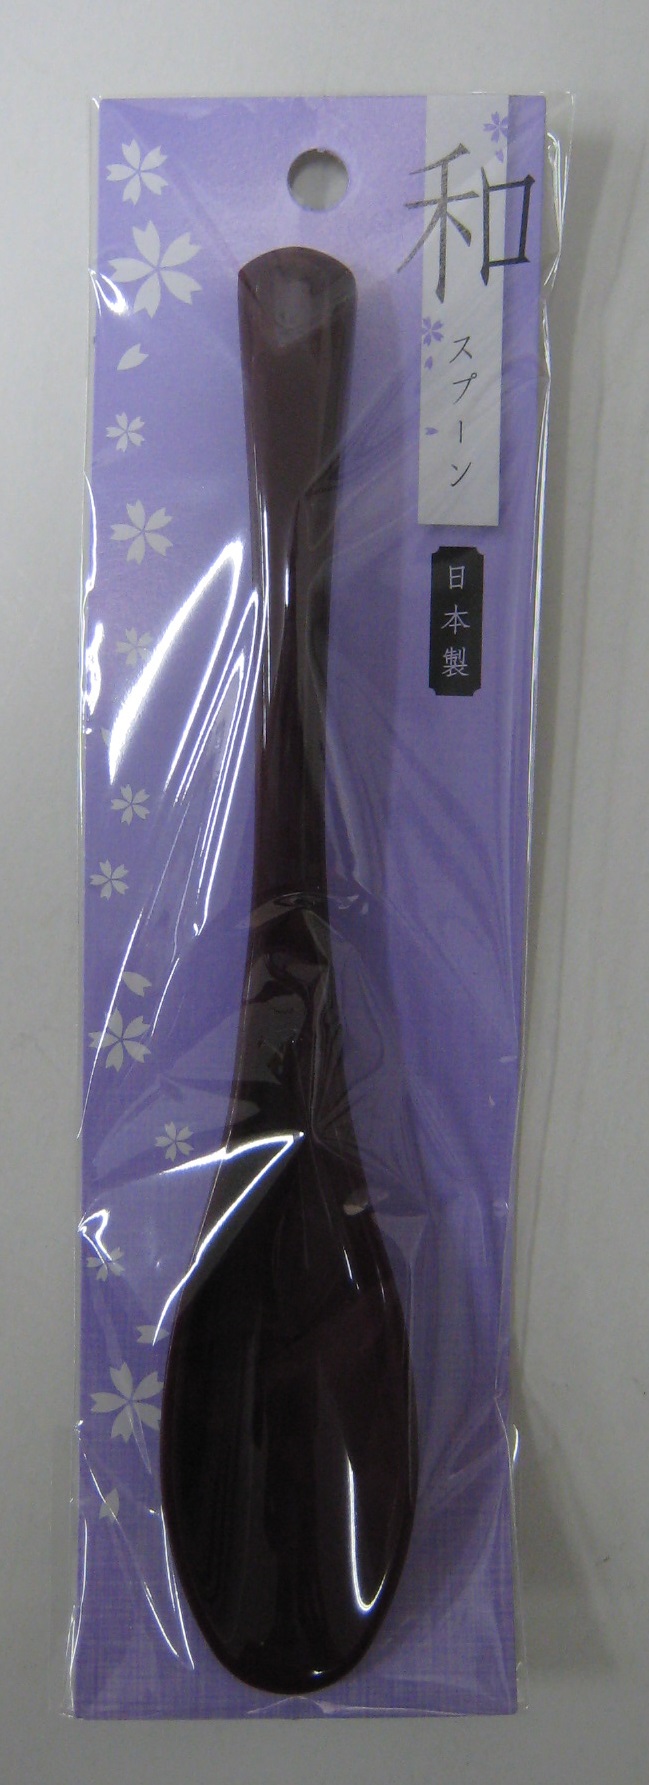 アルティス 和スプーン (大) 紫 (プラスチック 日本製)